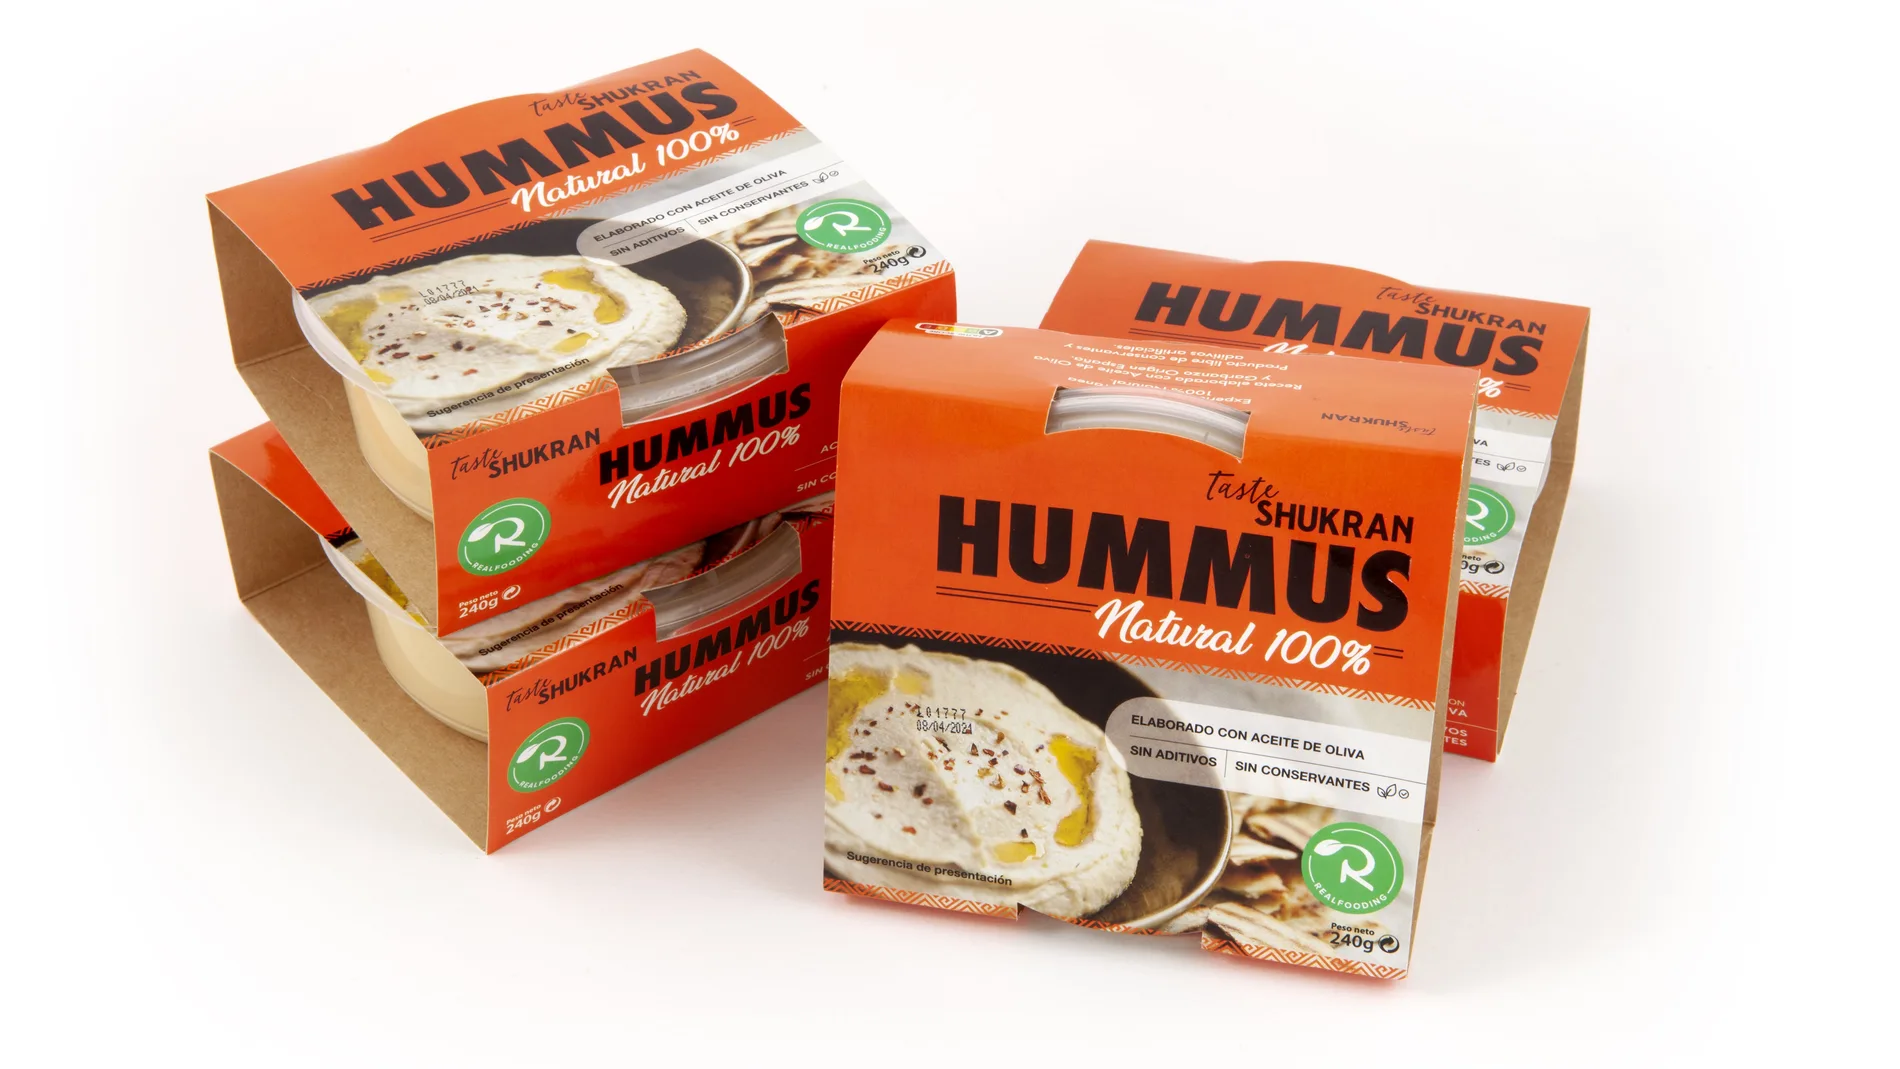 El hummus realfooding es el primero del mercado elaborado con aceite de oliva